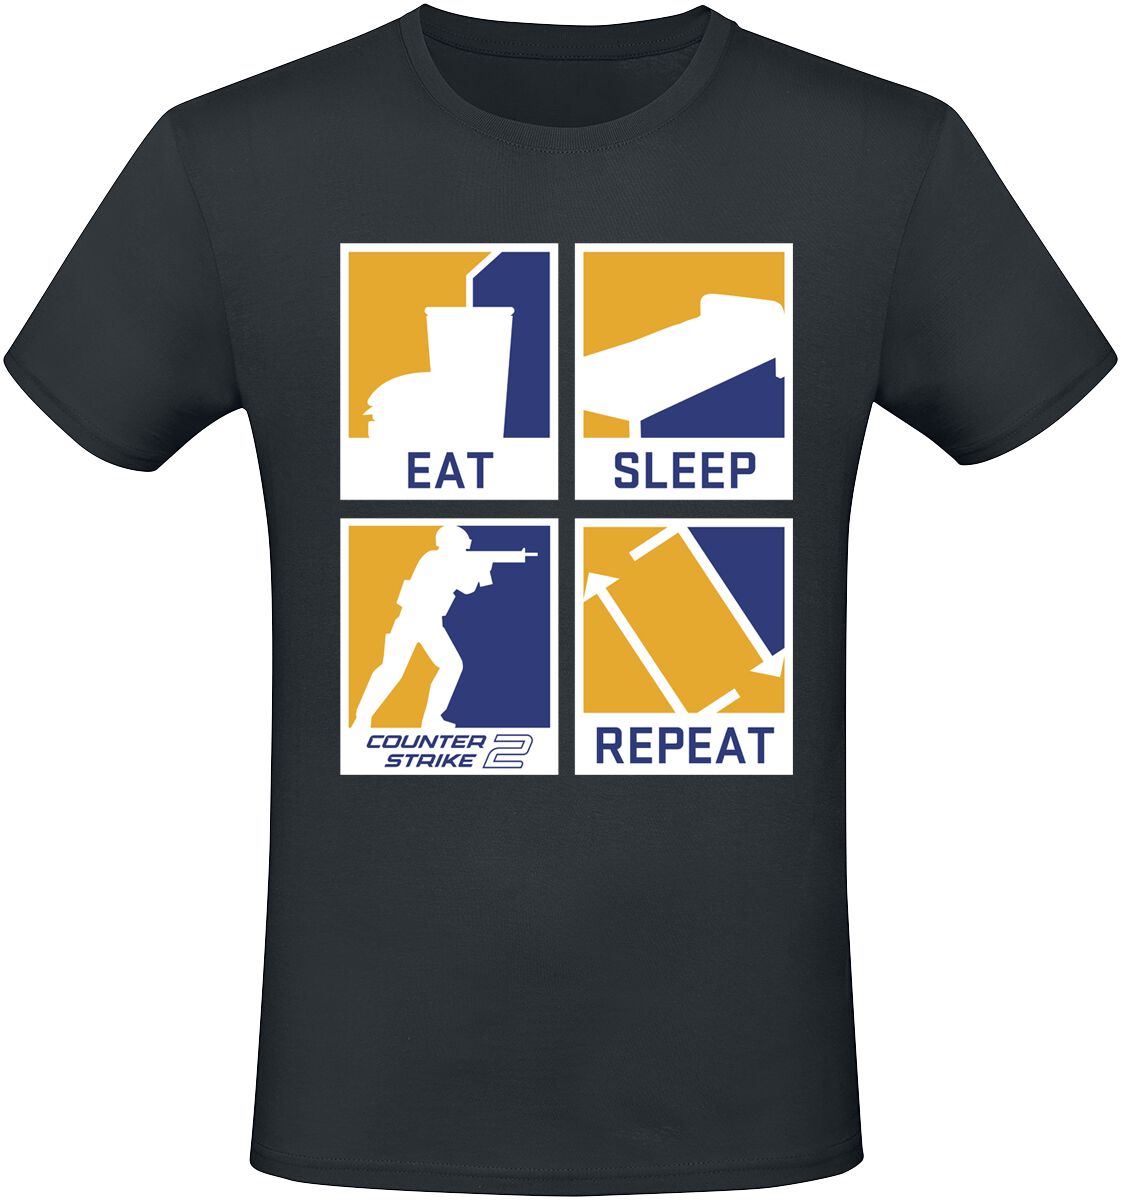 Counter-Strike - Gaming T-Shirt - 2 - Eat Sleep Repeat - S bis XXL - für Männer - Größe XL - schwarz  - EMP exklusives Merchandise!